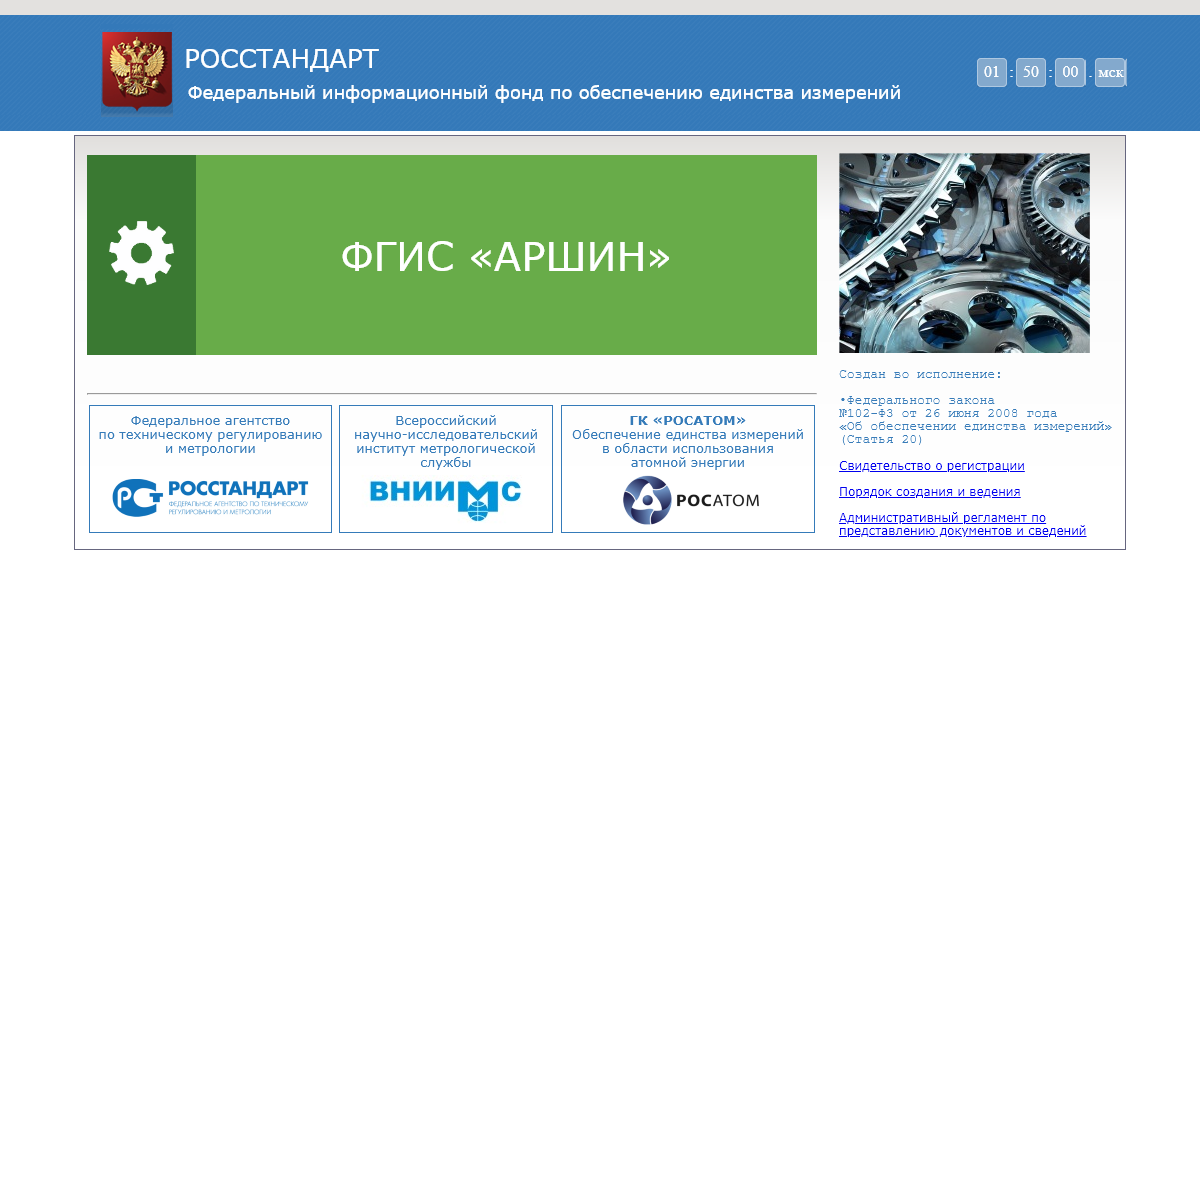 A complete backup of fundmetrology.ru